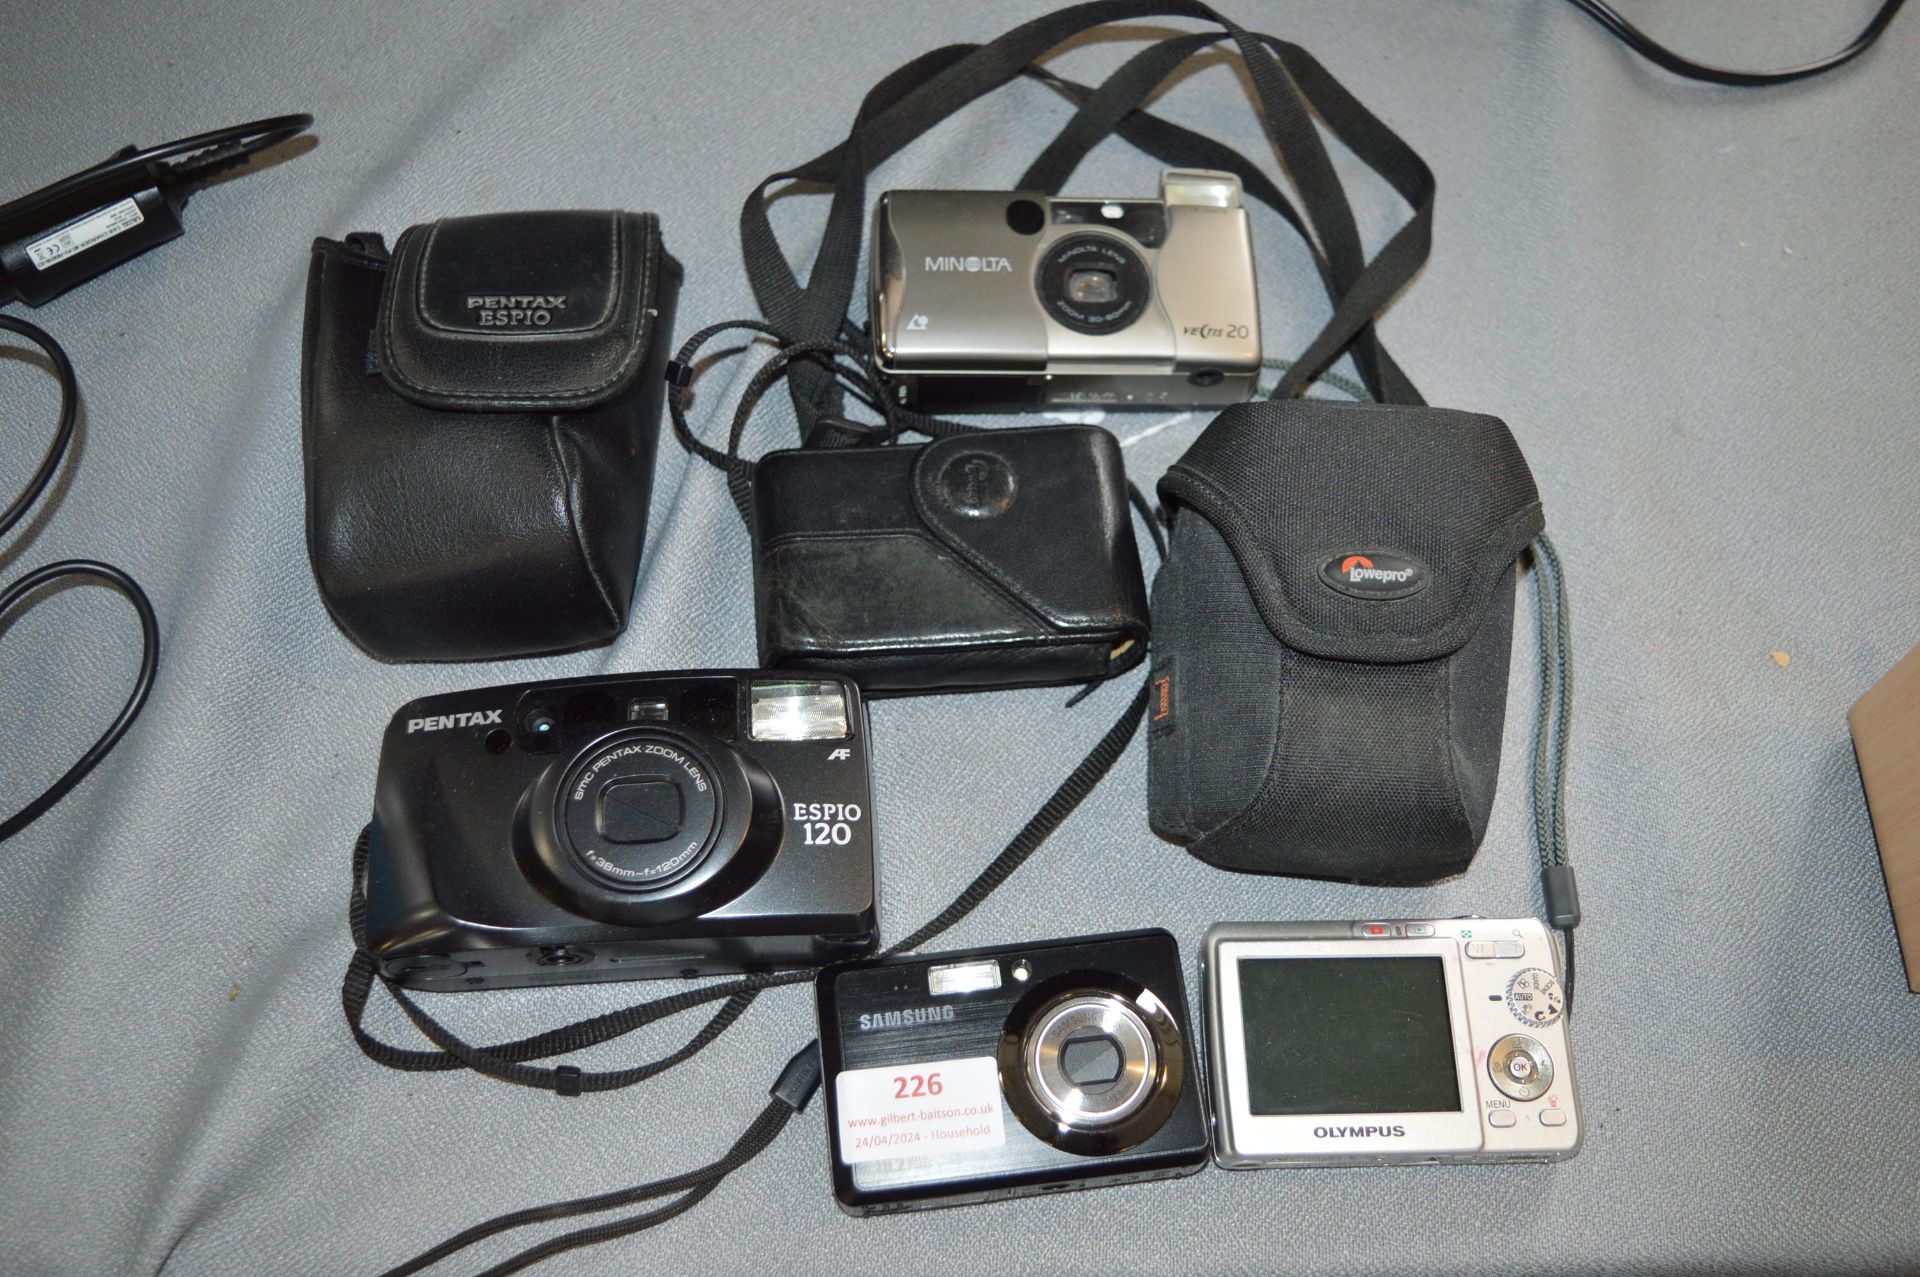 Digital Cameras by Olympus, Samsung, etc.